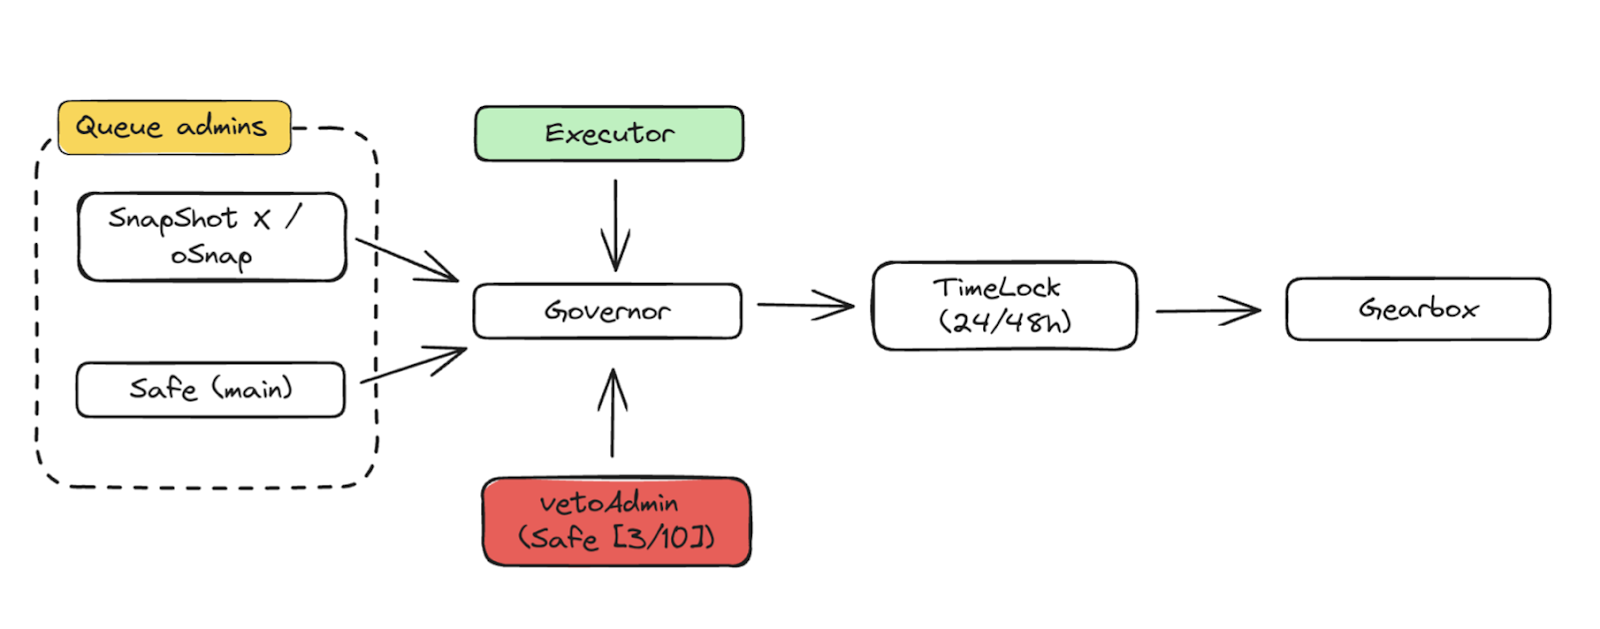 Gearbox V3: Evolving the Governance Model